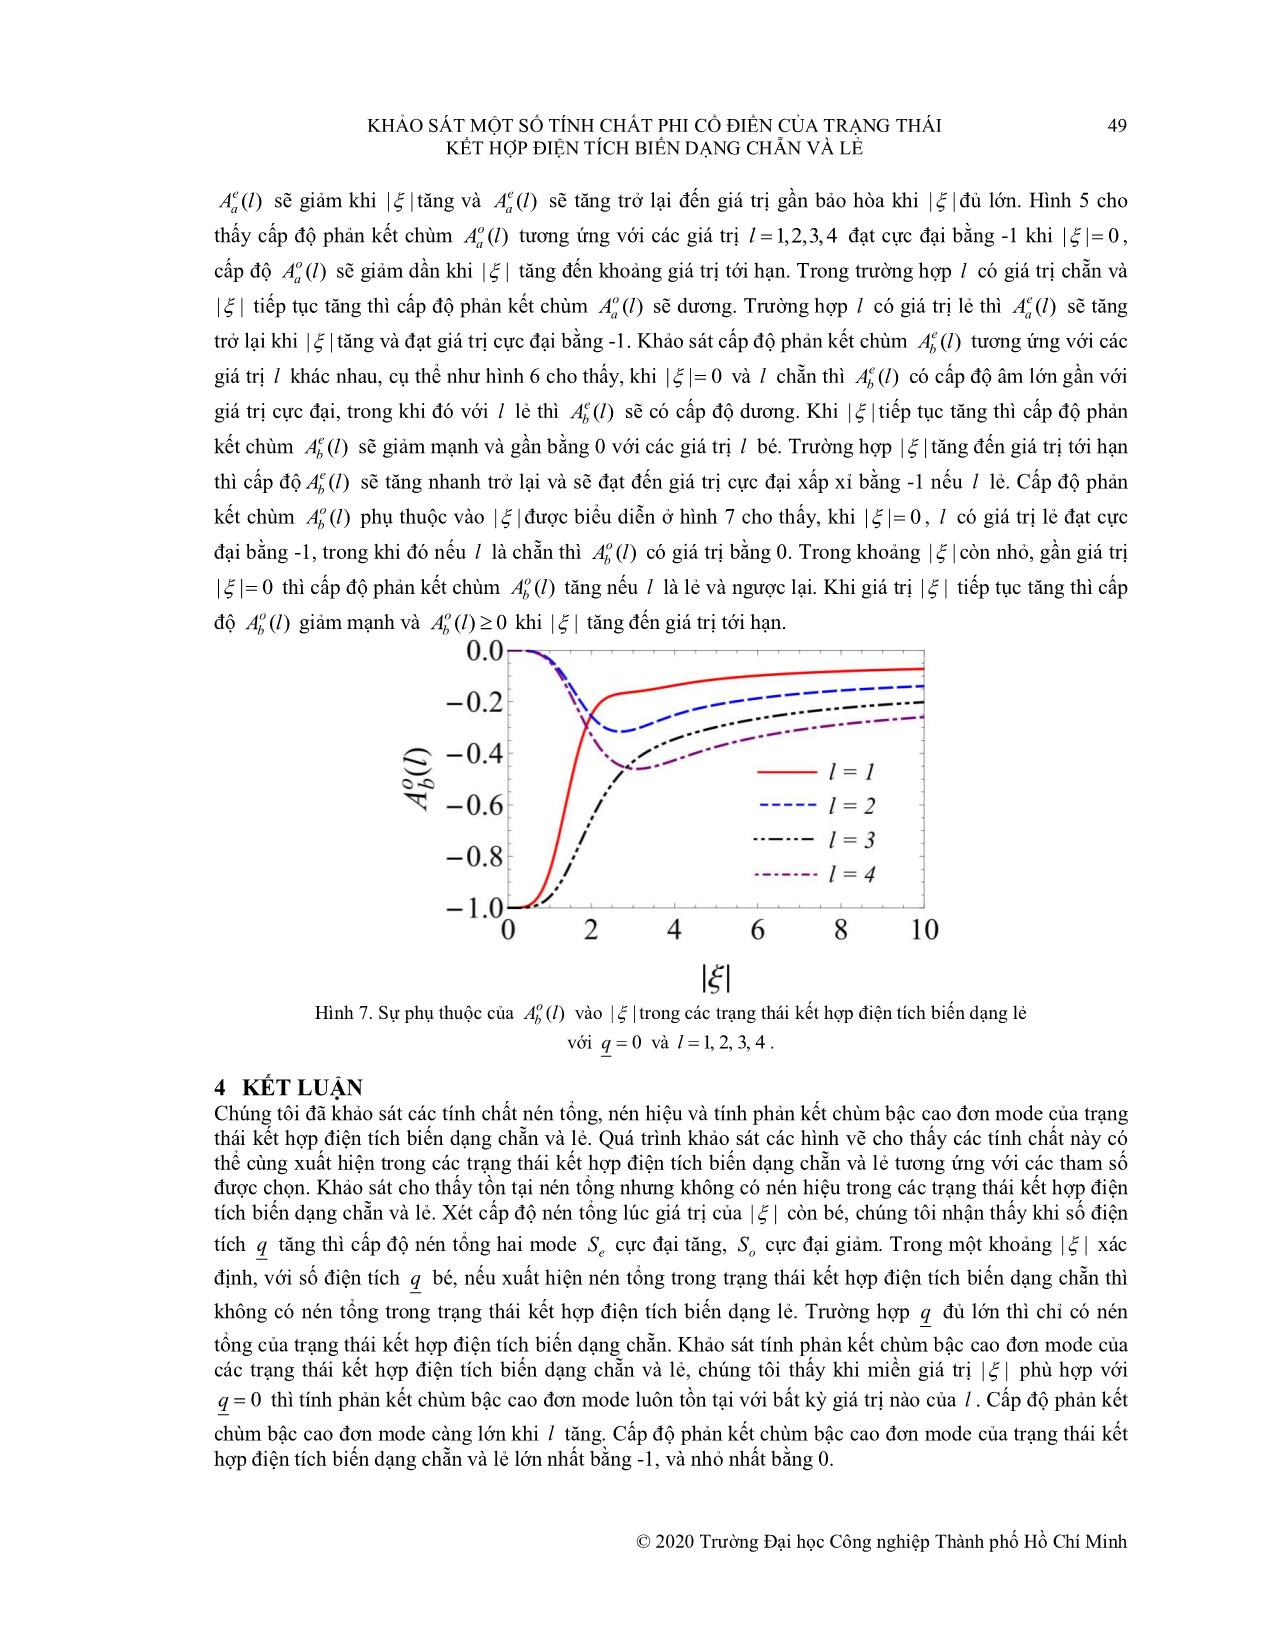 Khảo sát một số tính chất phi cổ điển của trạng thái kết hợp điện tích biến dạng chẵn và lẻ trang 8